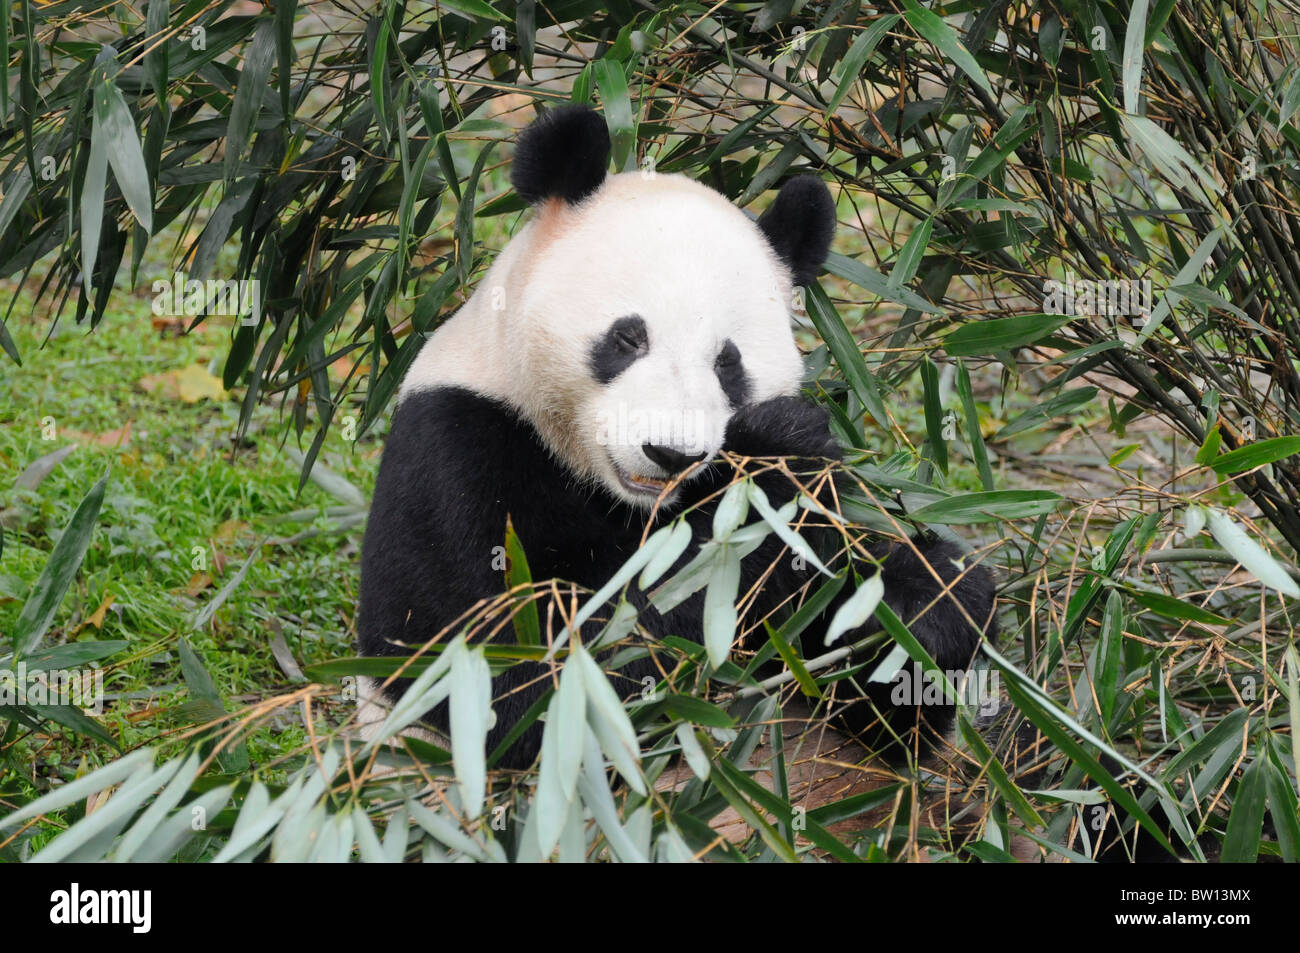 Panda géant (Ailuropoda melanoleuca) eating Bamboo, reproduction Pandas de Chengdu, province du Sichuan, Chine Banque D'Images